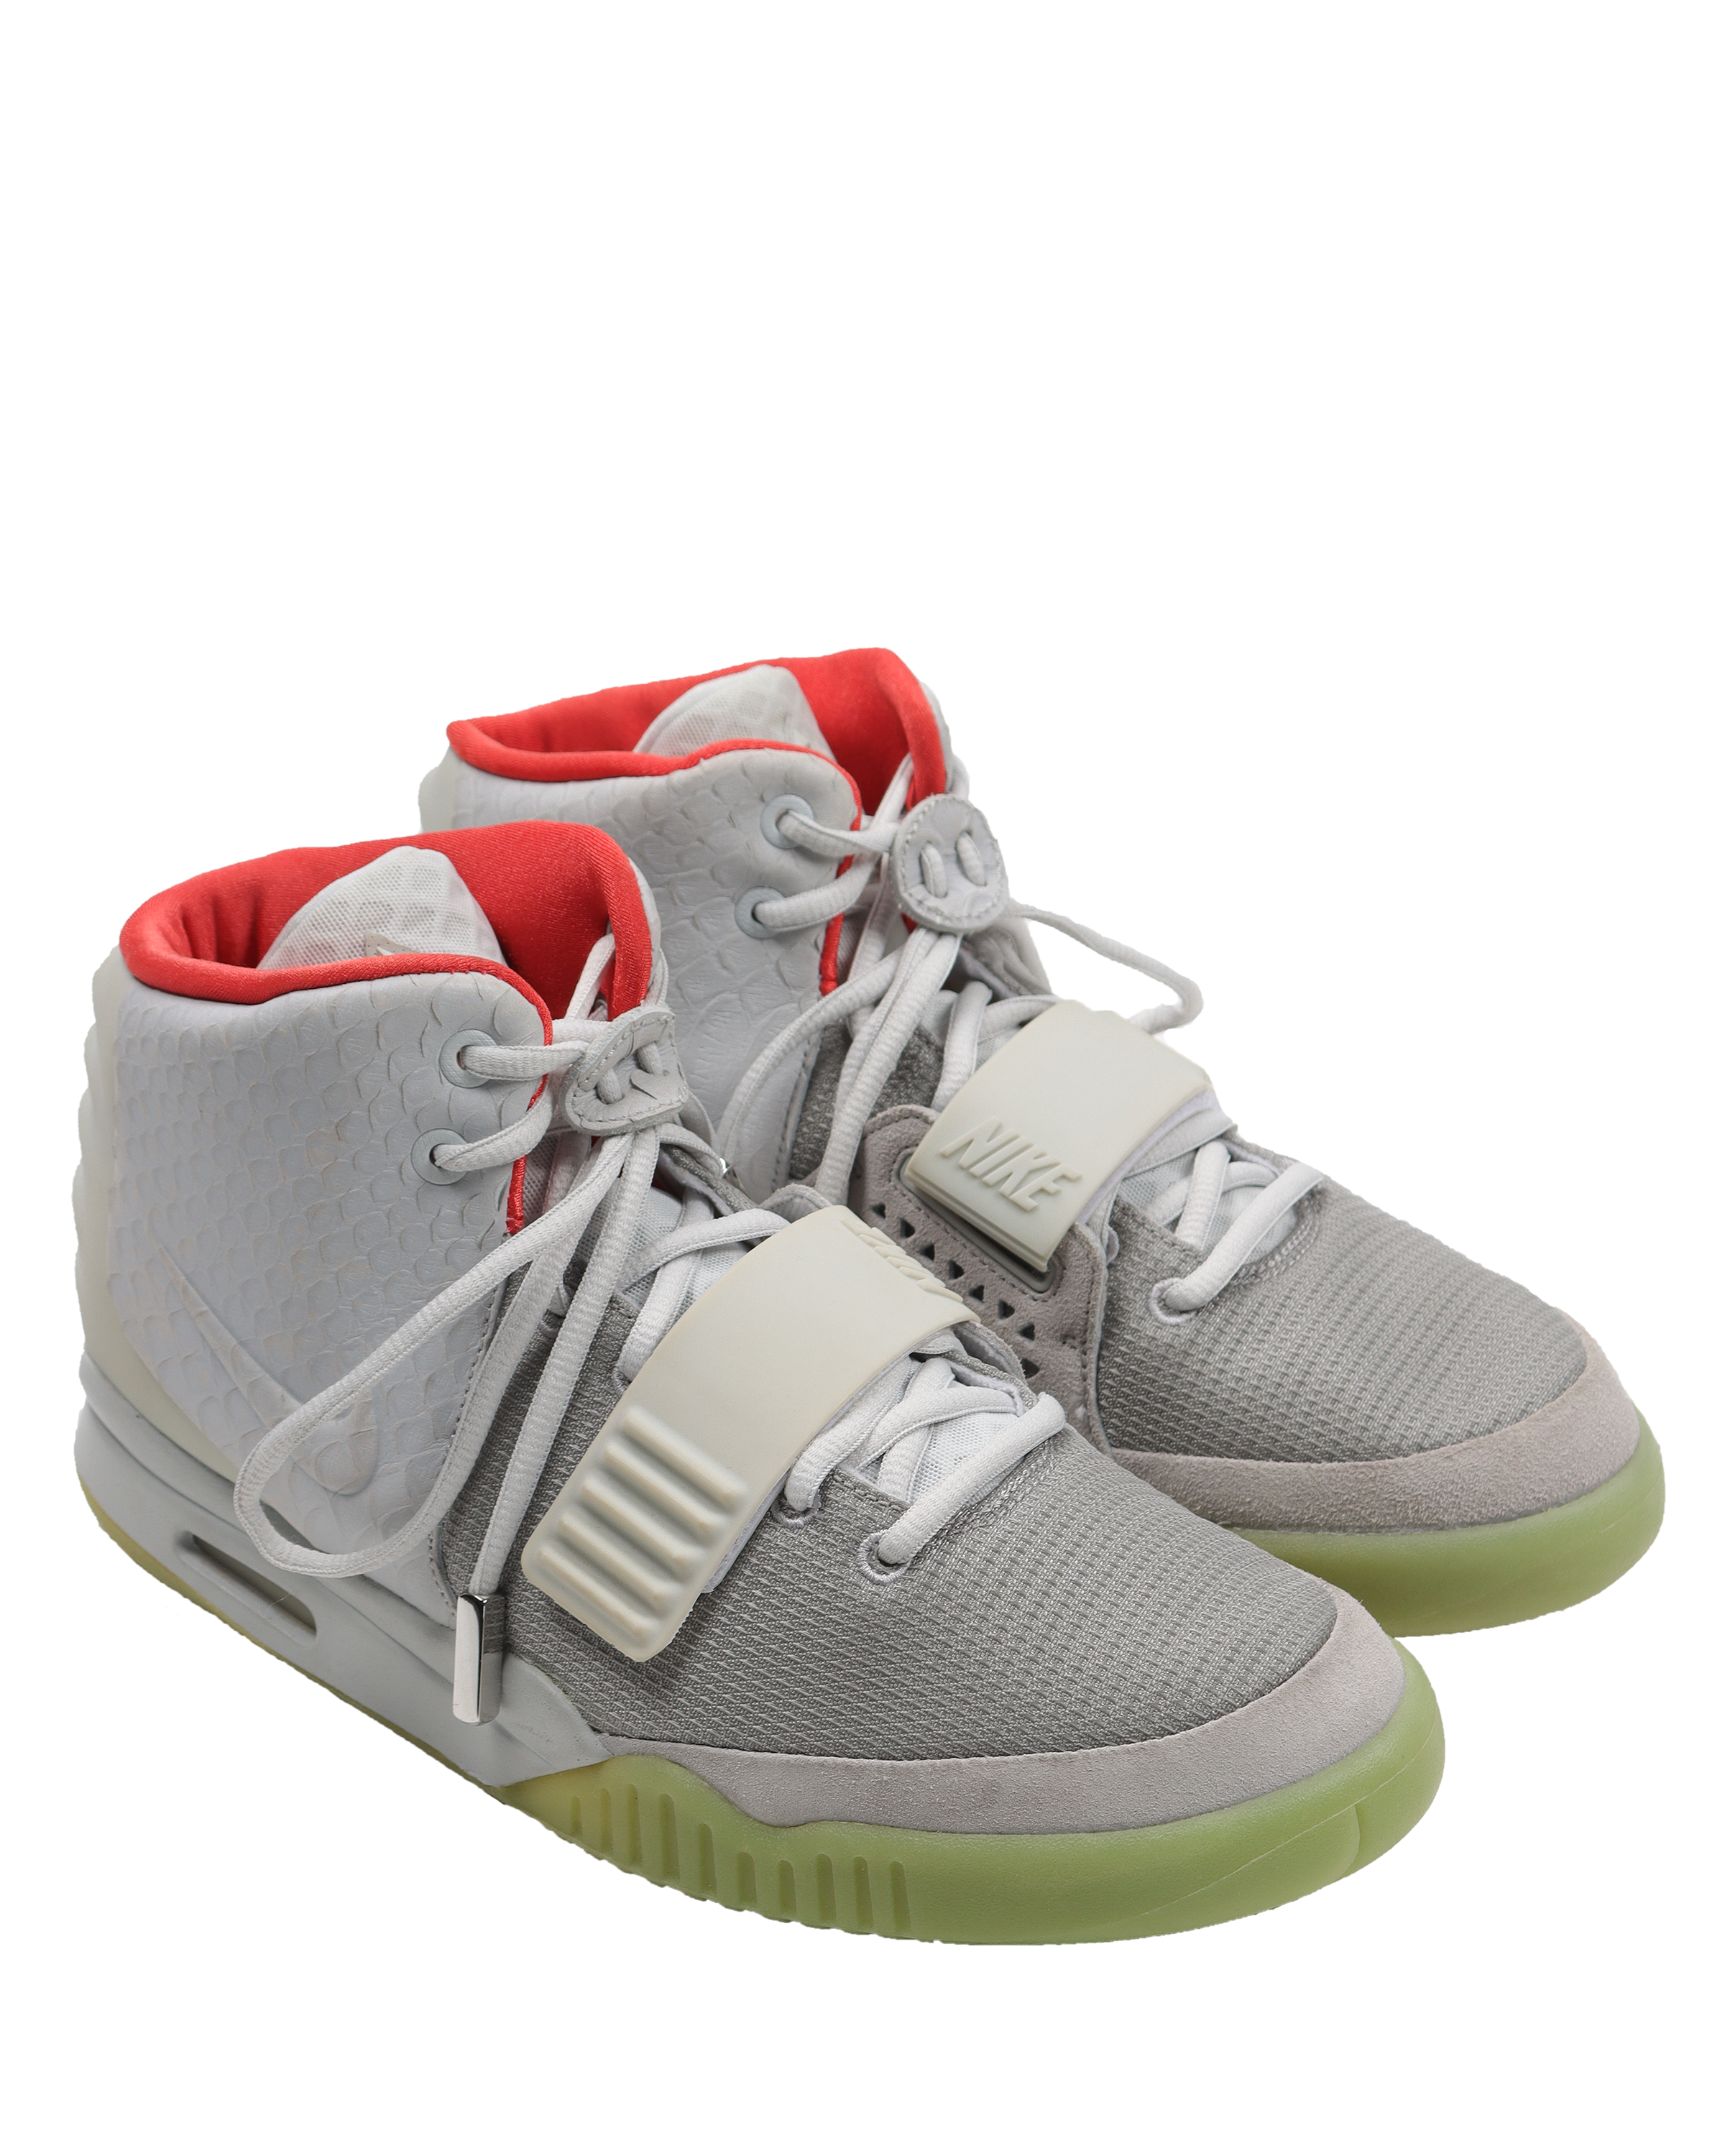 Nike Air Yeezy 2 Pure Platinum - Sneaker Freaker